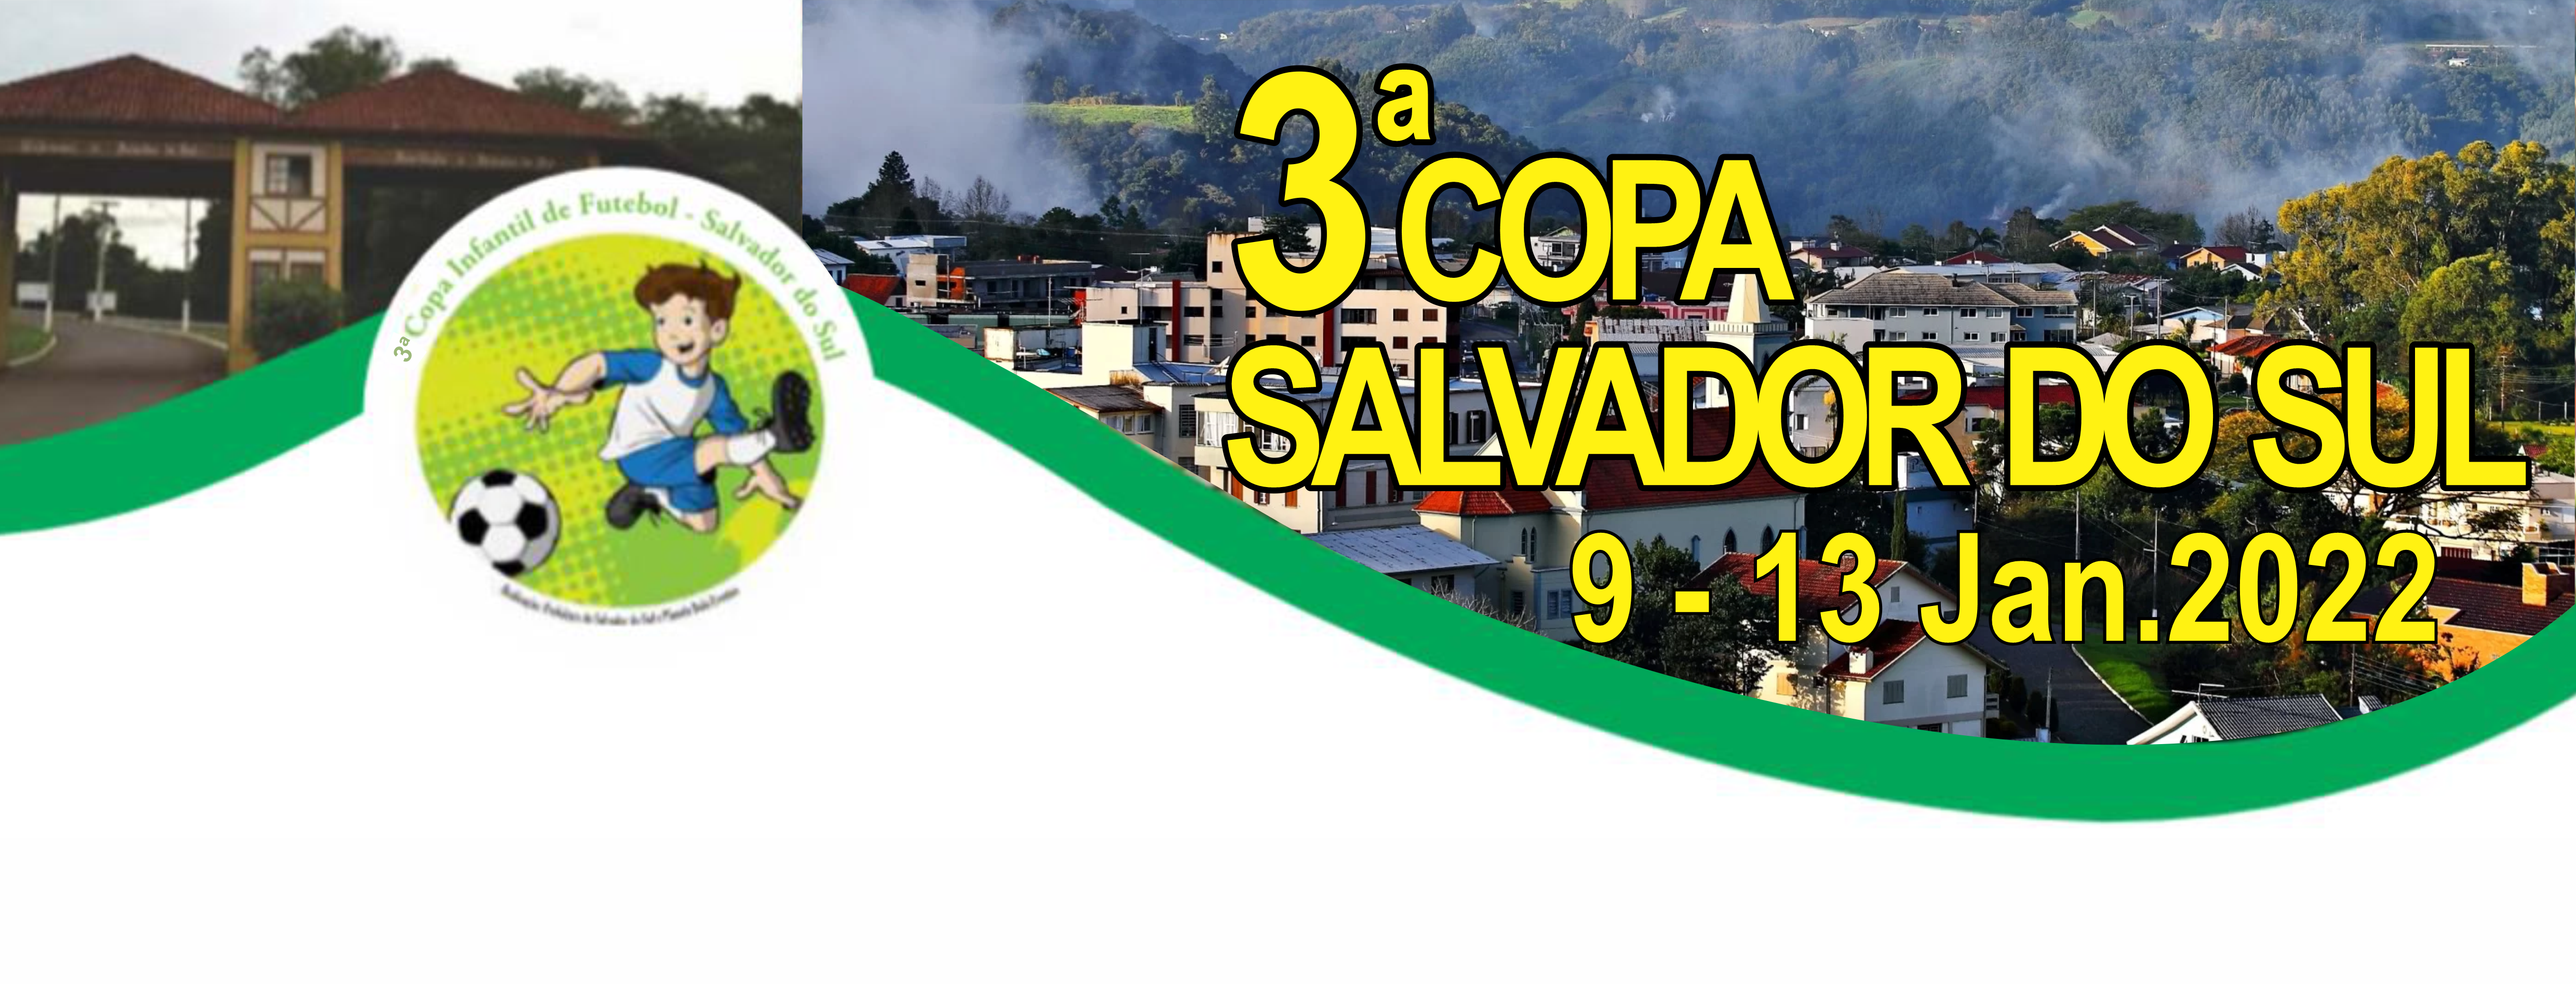 Copa Salvador do Sul 2022 - Planeta Bola Eventos Esportivos